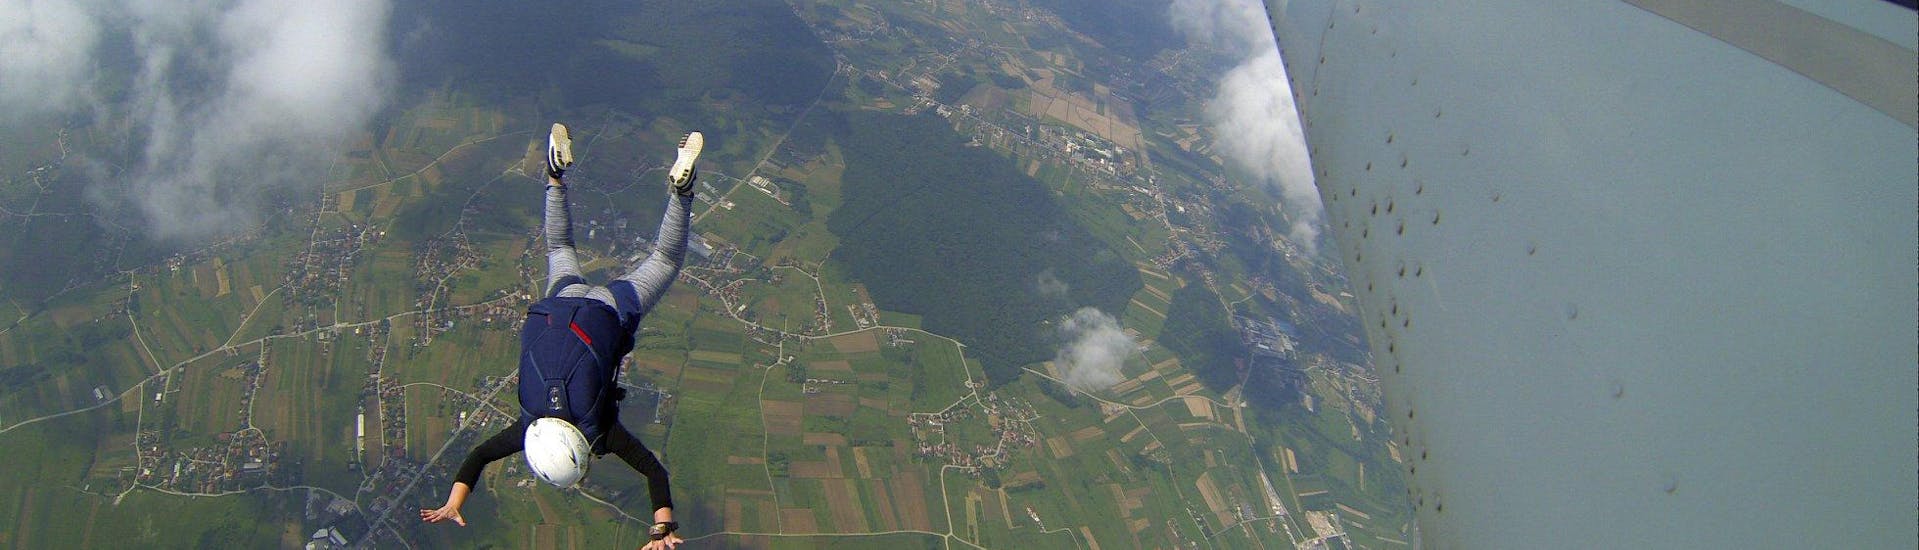 Tandem skydive in Ježdovec - Aerodrome Zagreb-Lučko.